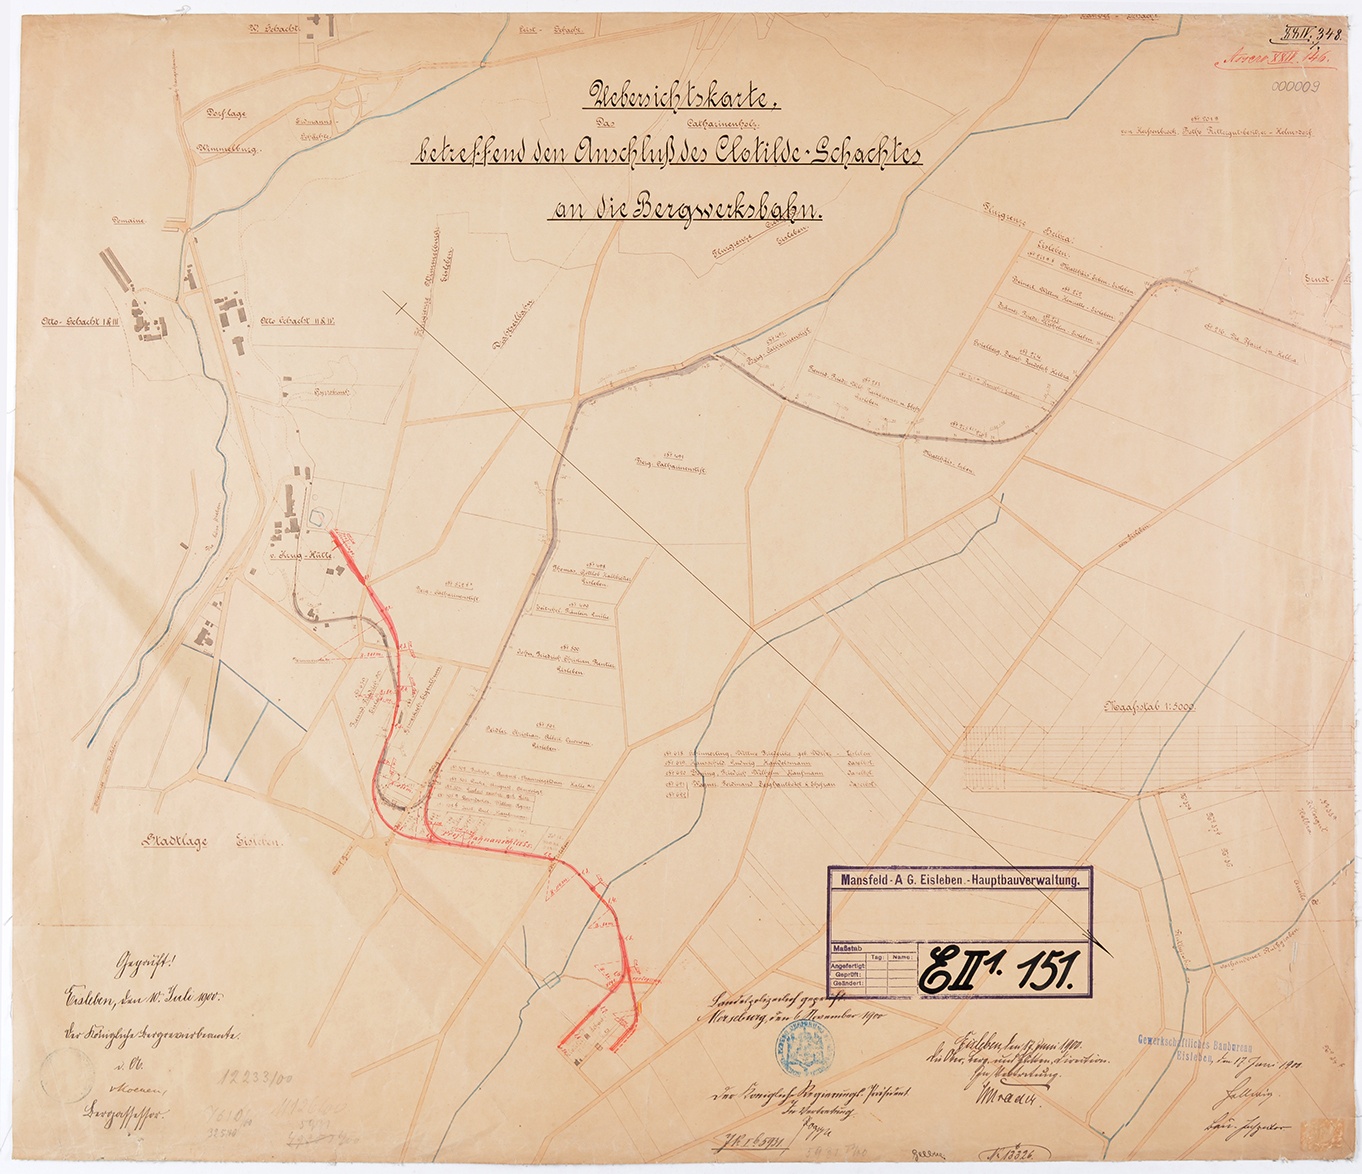 Uebersichtskarte betreffend den Anschluß des Clotilde-Schachtes an die Bergwerksbahn. (Mansfeld-Museum im Humboldt-Schloss CC BY-NC-SA)